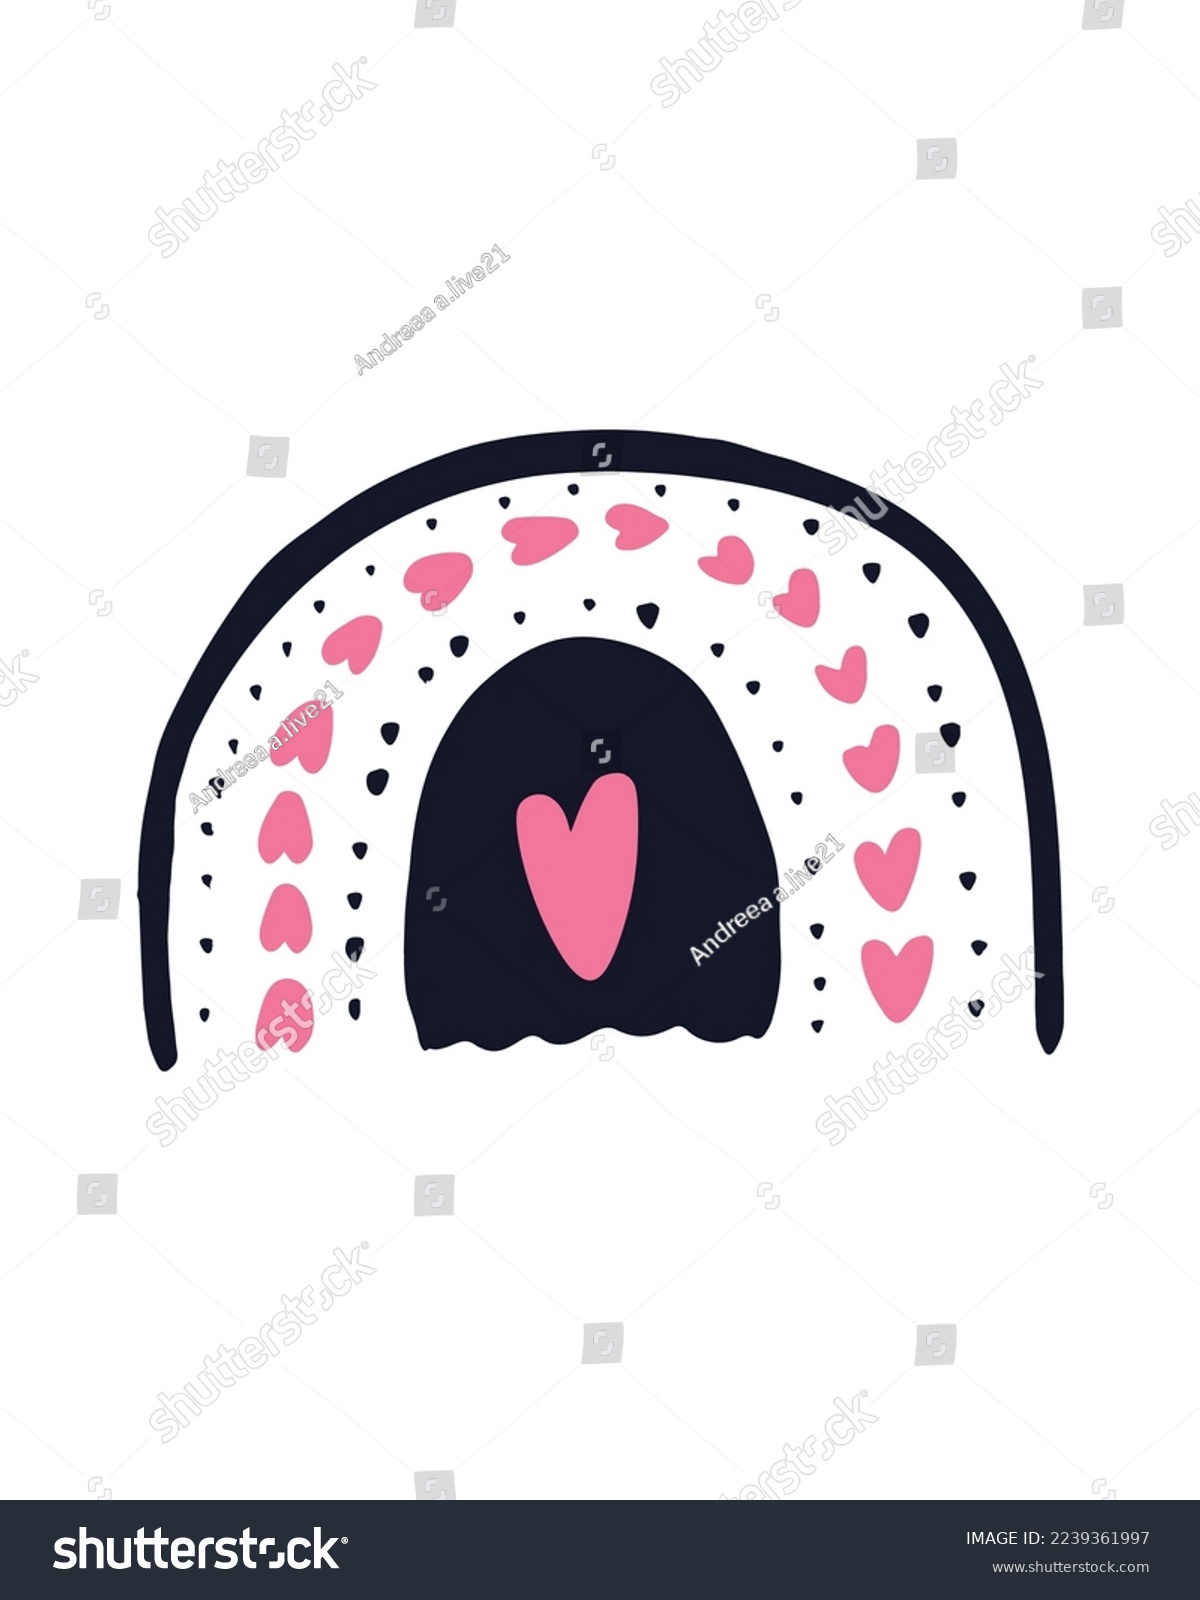 SVG of Valentine's Day Vector SVG, Doodle Hearts Illustration, Hearts Vectors, Love Illustration, Pink Hearts, Painted Hearts Illustration, Rainbow Vector svg